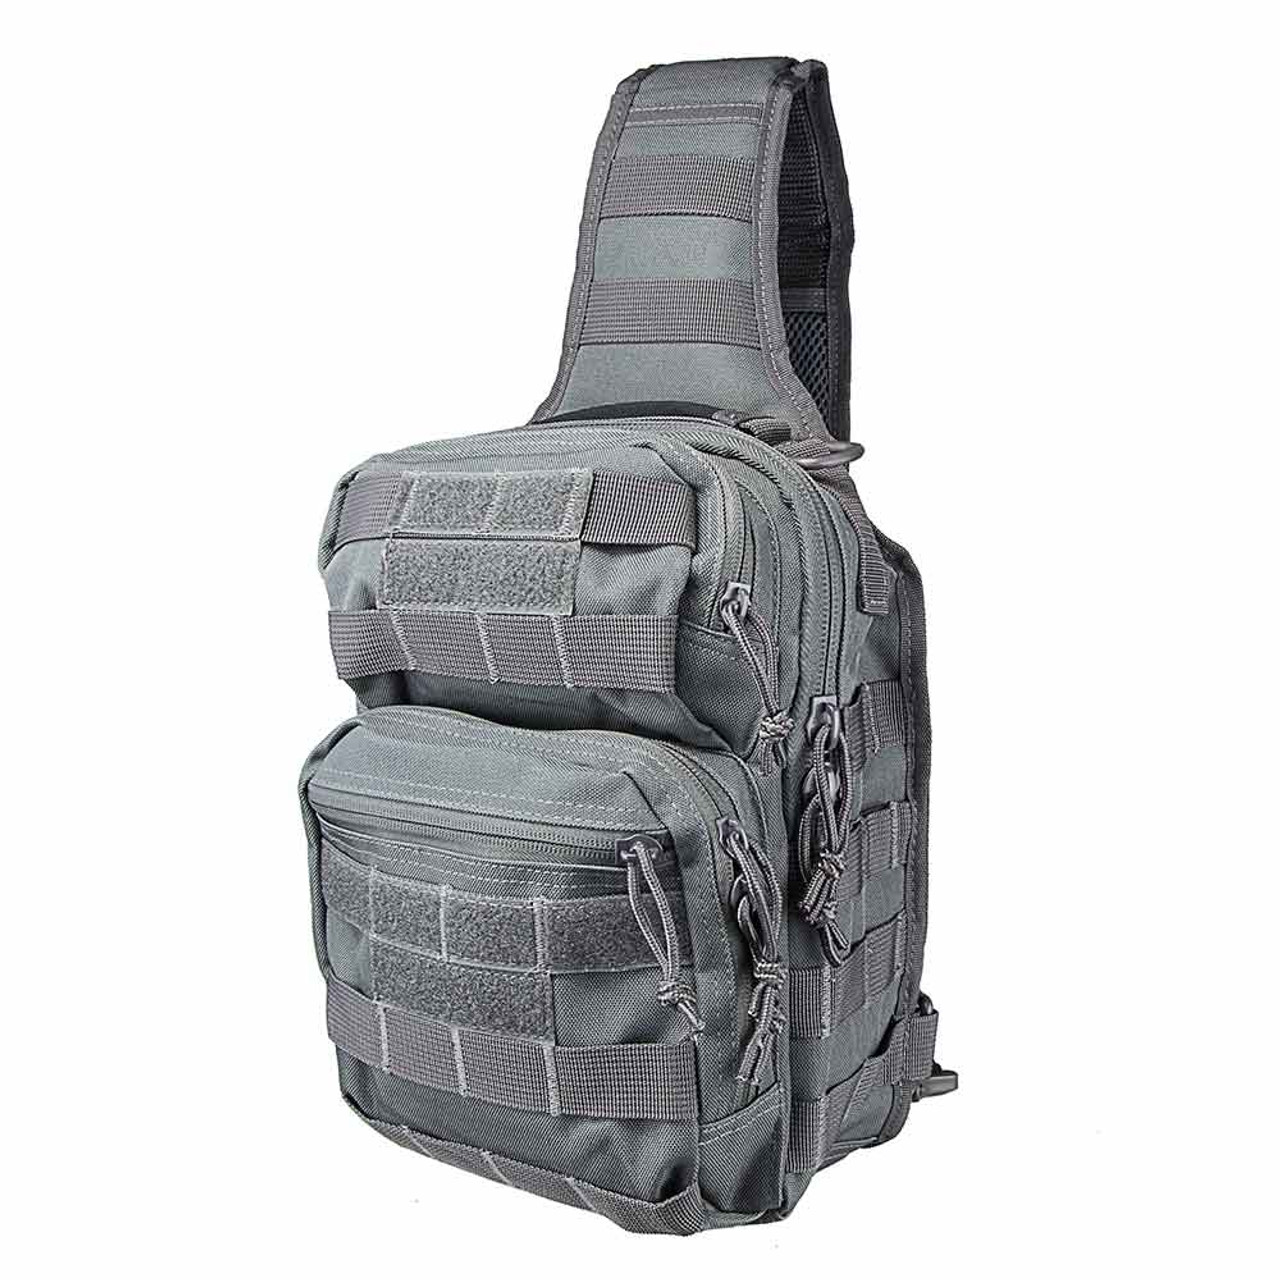 NcStar CVSUB3025U Tactical Sling Chest Pack Shoulder Bag Outdoor Hiking Travel Backpack